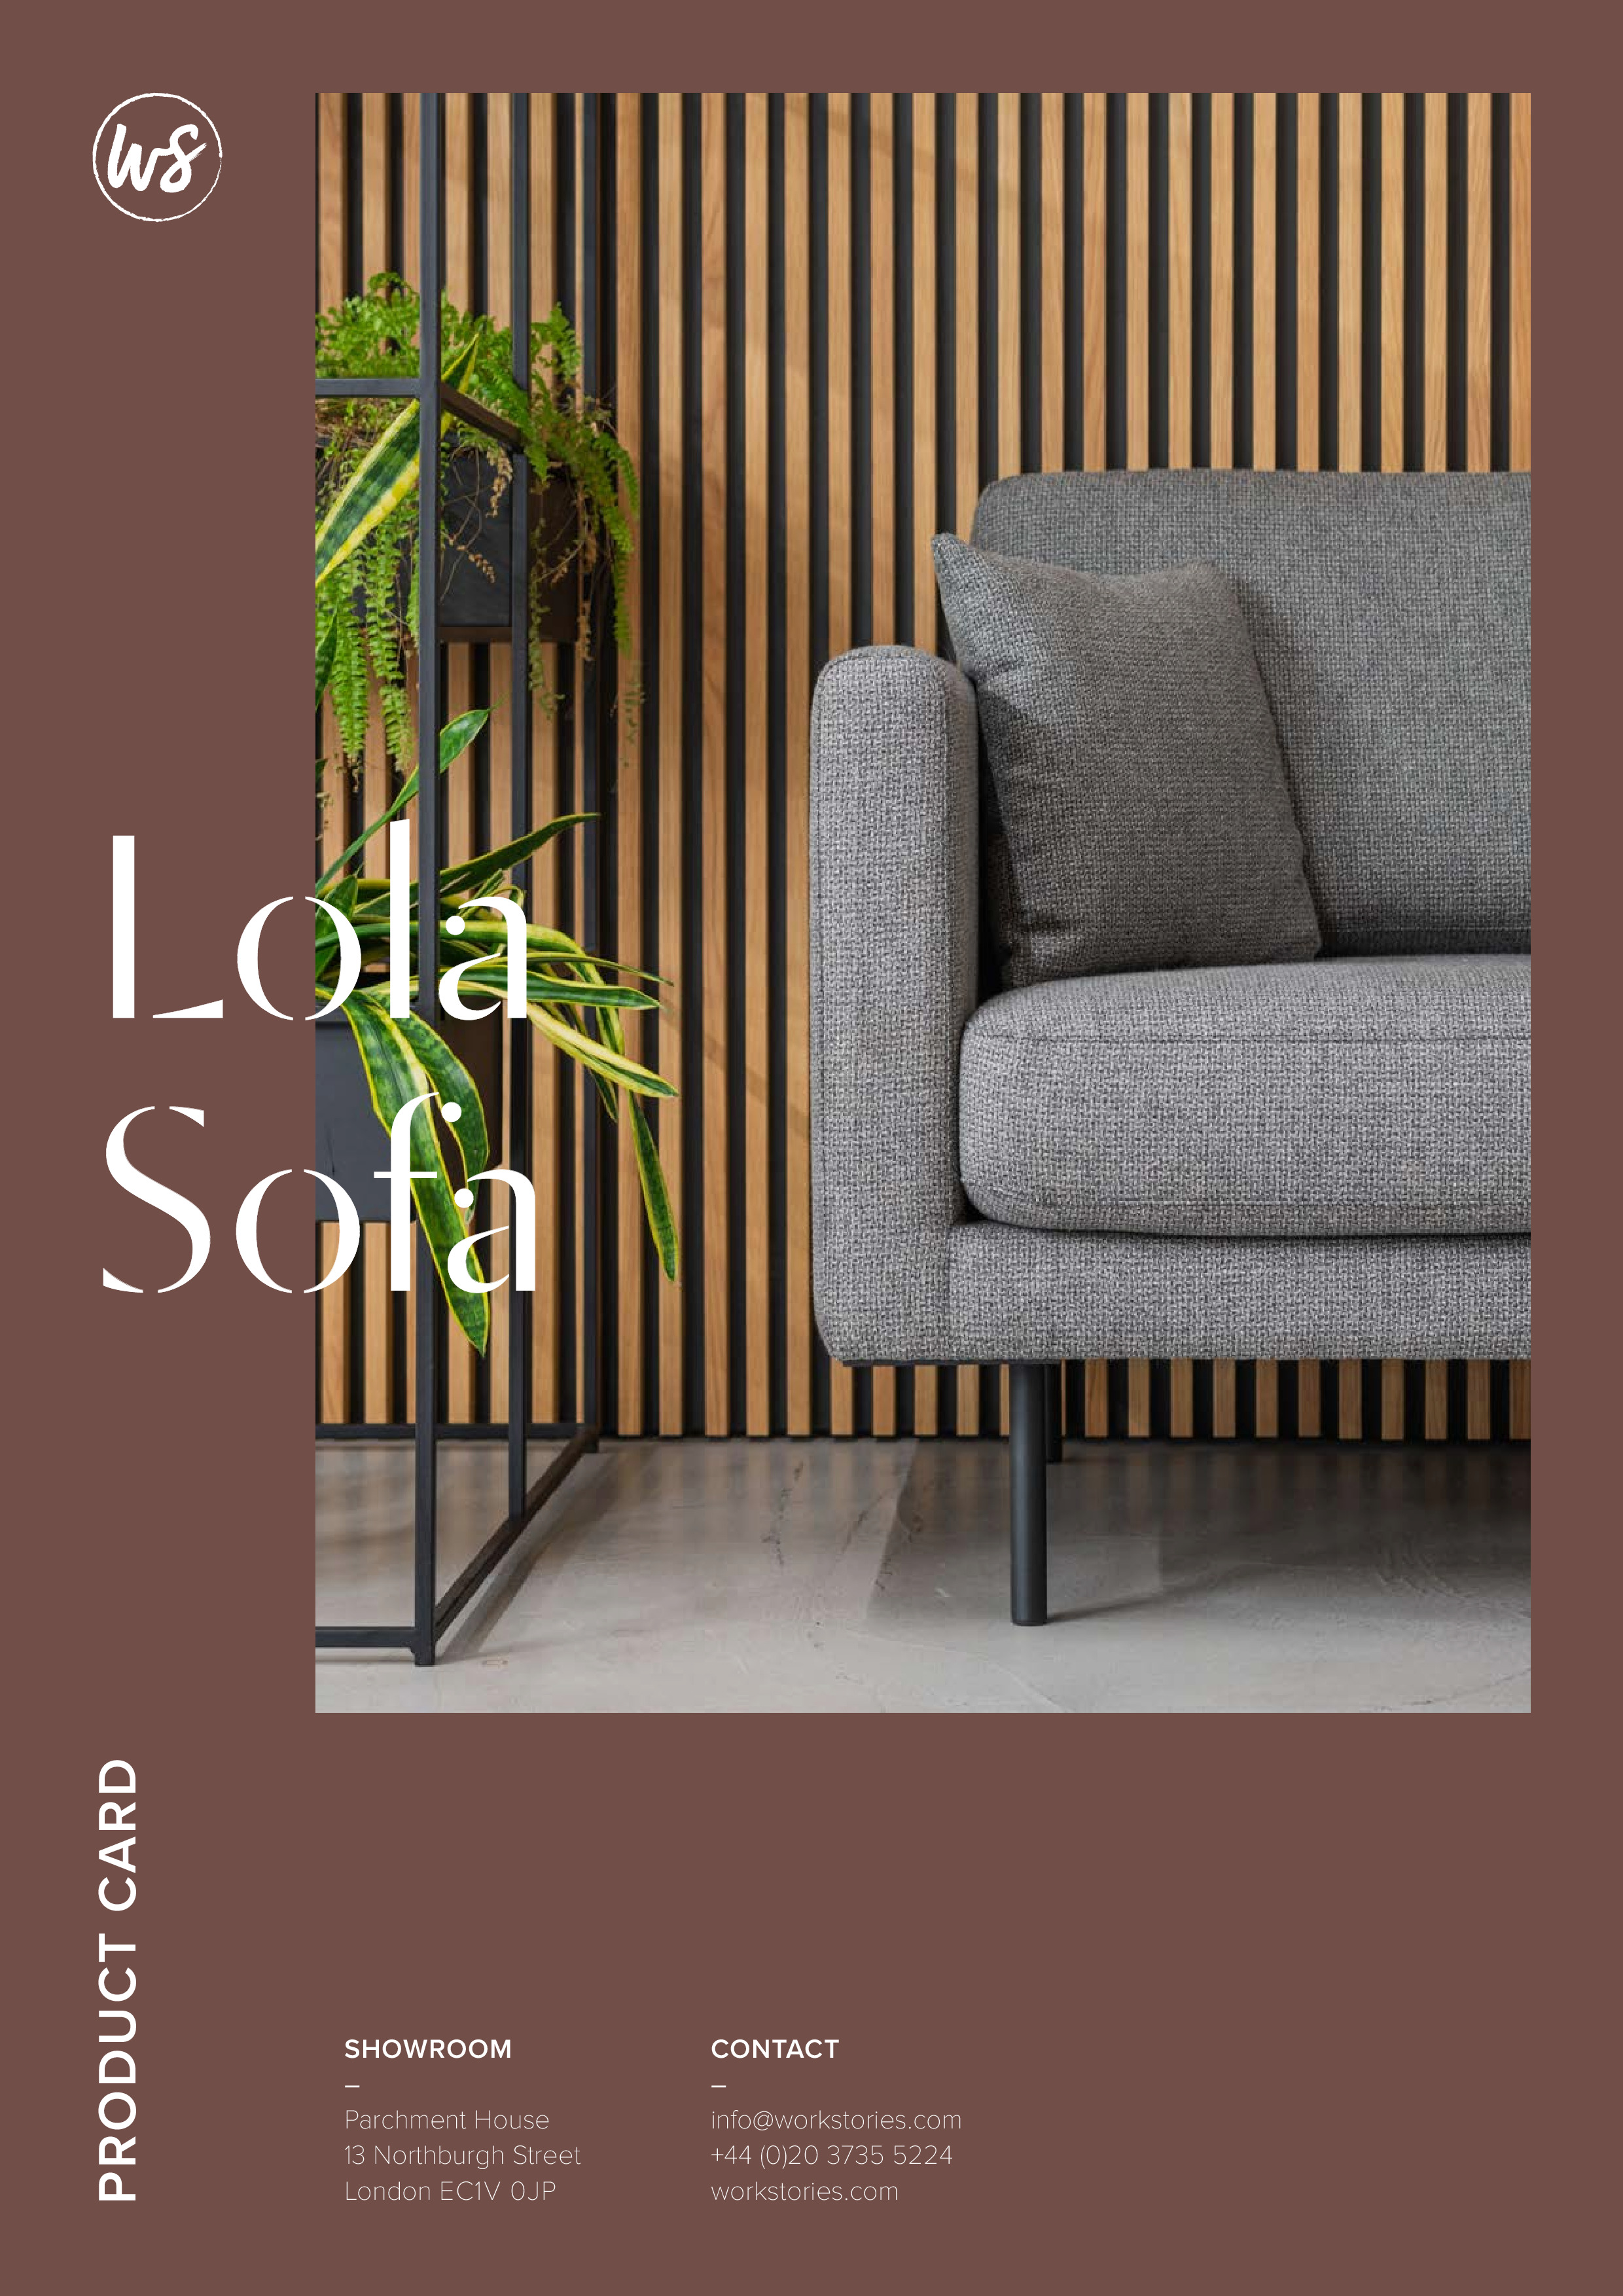 WS - Lola Sofa - Product card